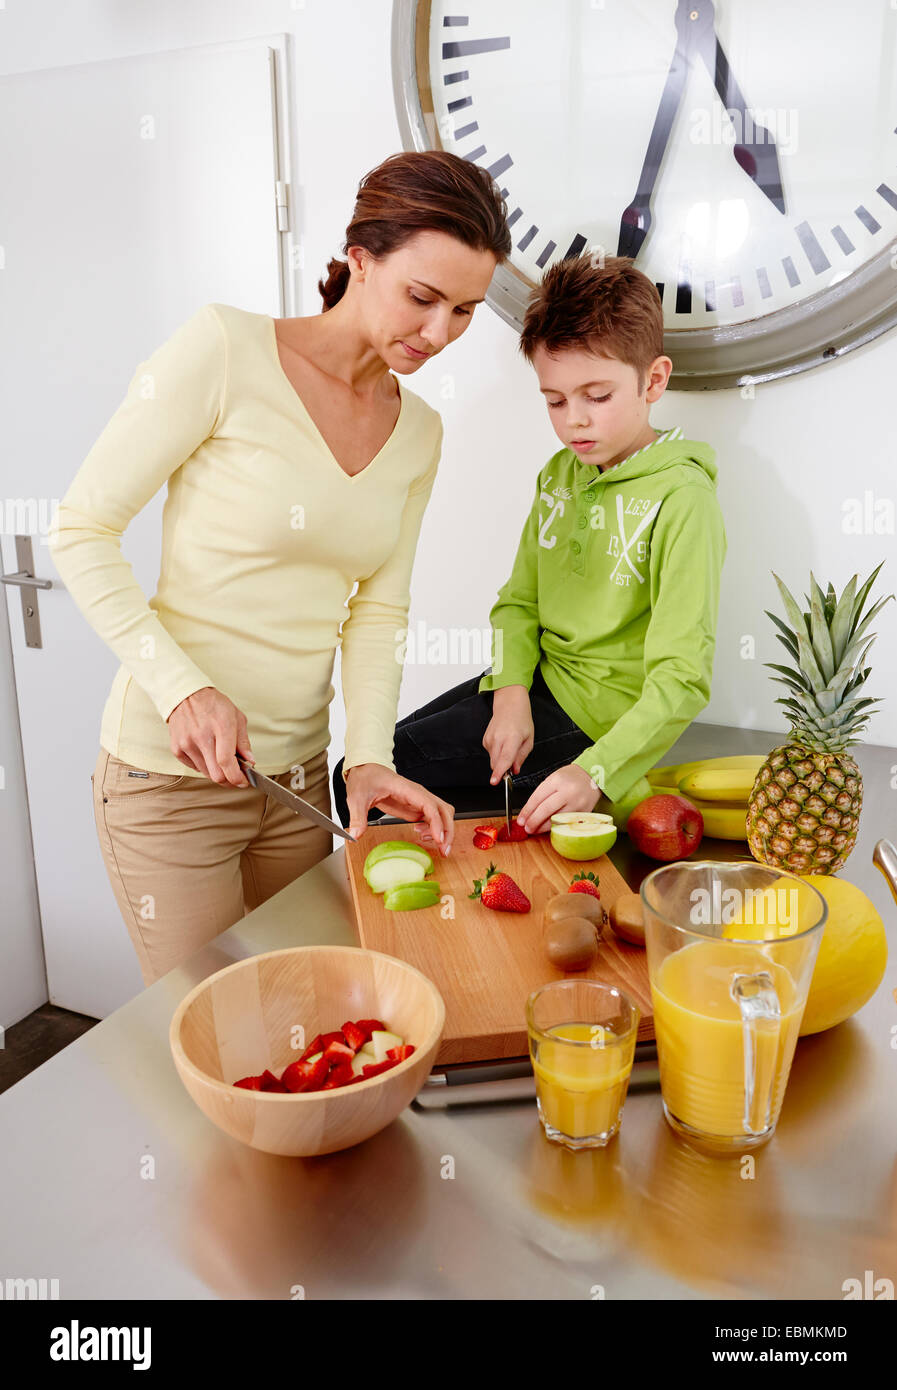 Mère et fils couper divers types de fruits sur une planche à découper dans une cuisine, Allemagne Banque D'Images